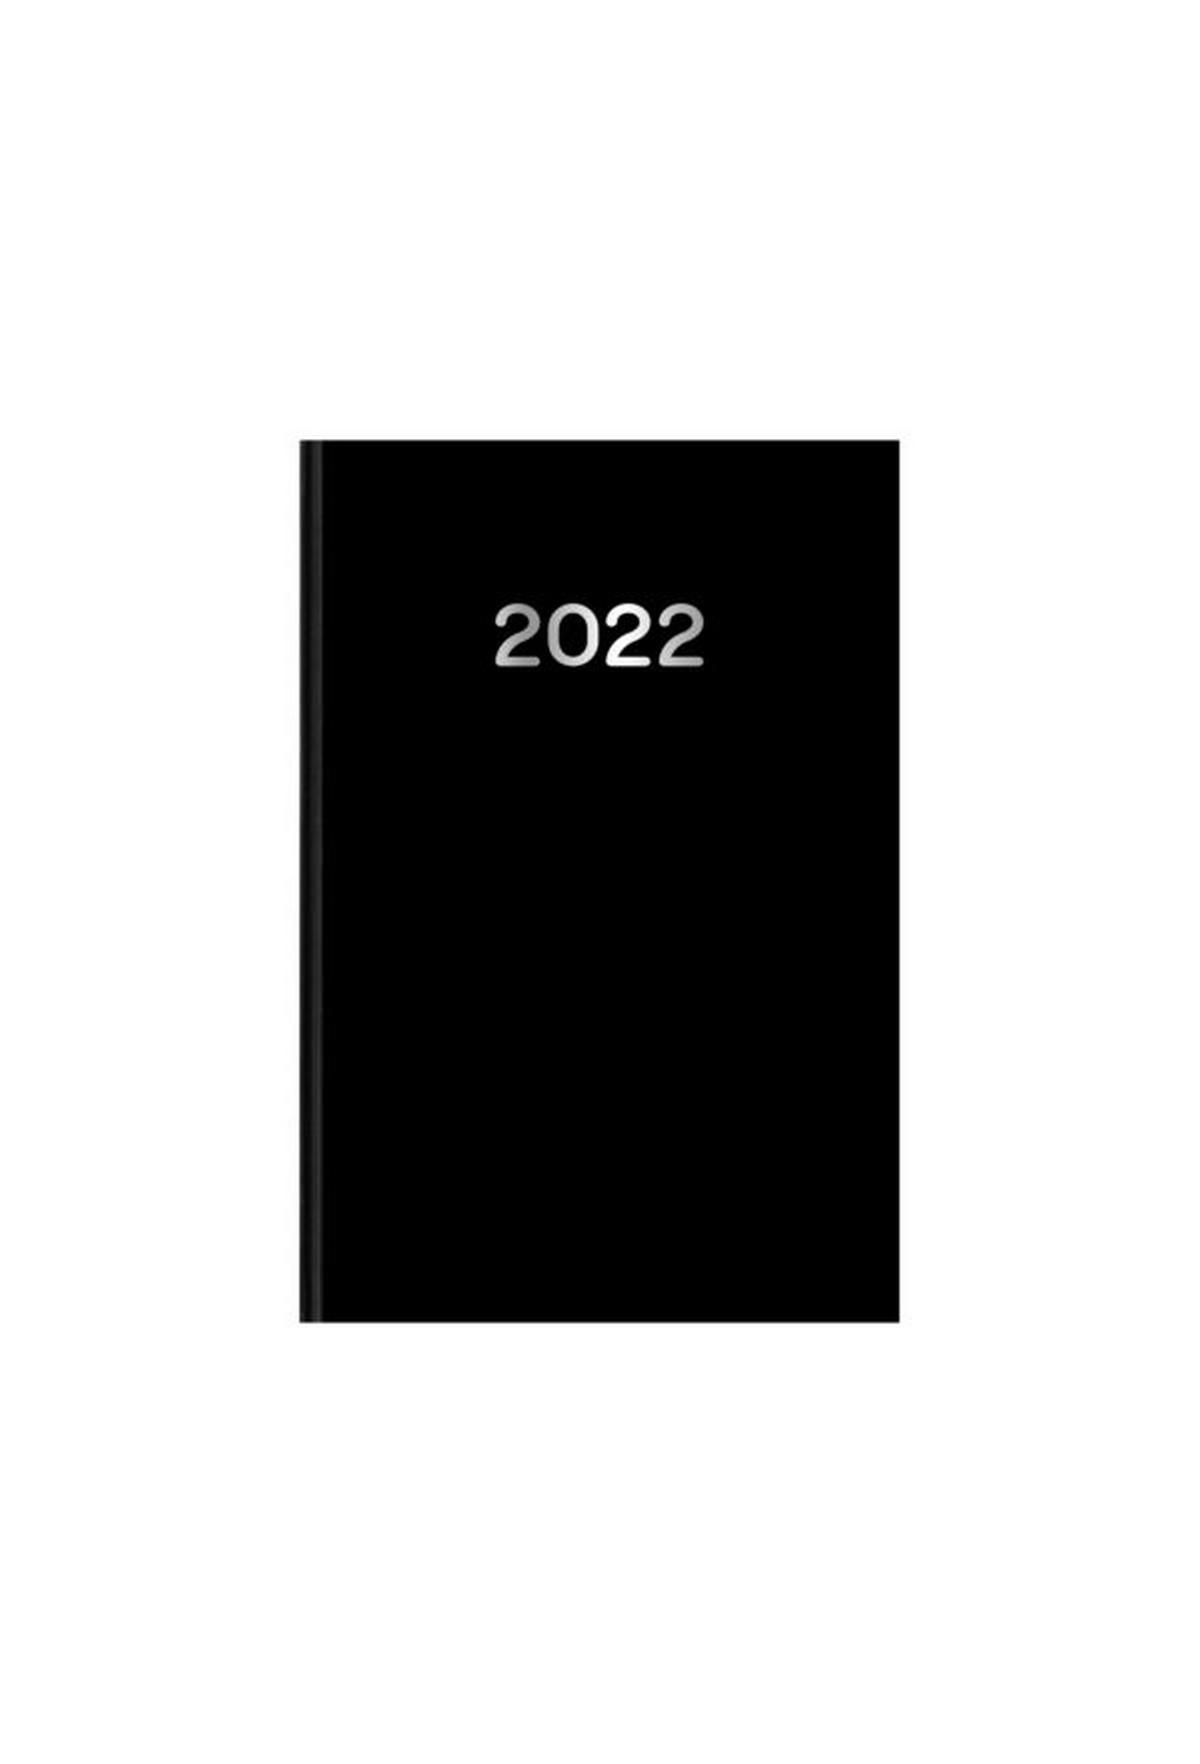 Ημερήσιο ημερολόγιο 2022 simple μαύρο 21 x 29 cm